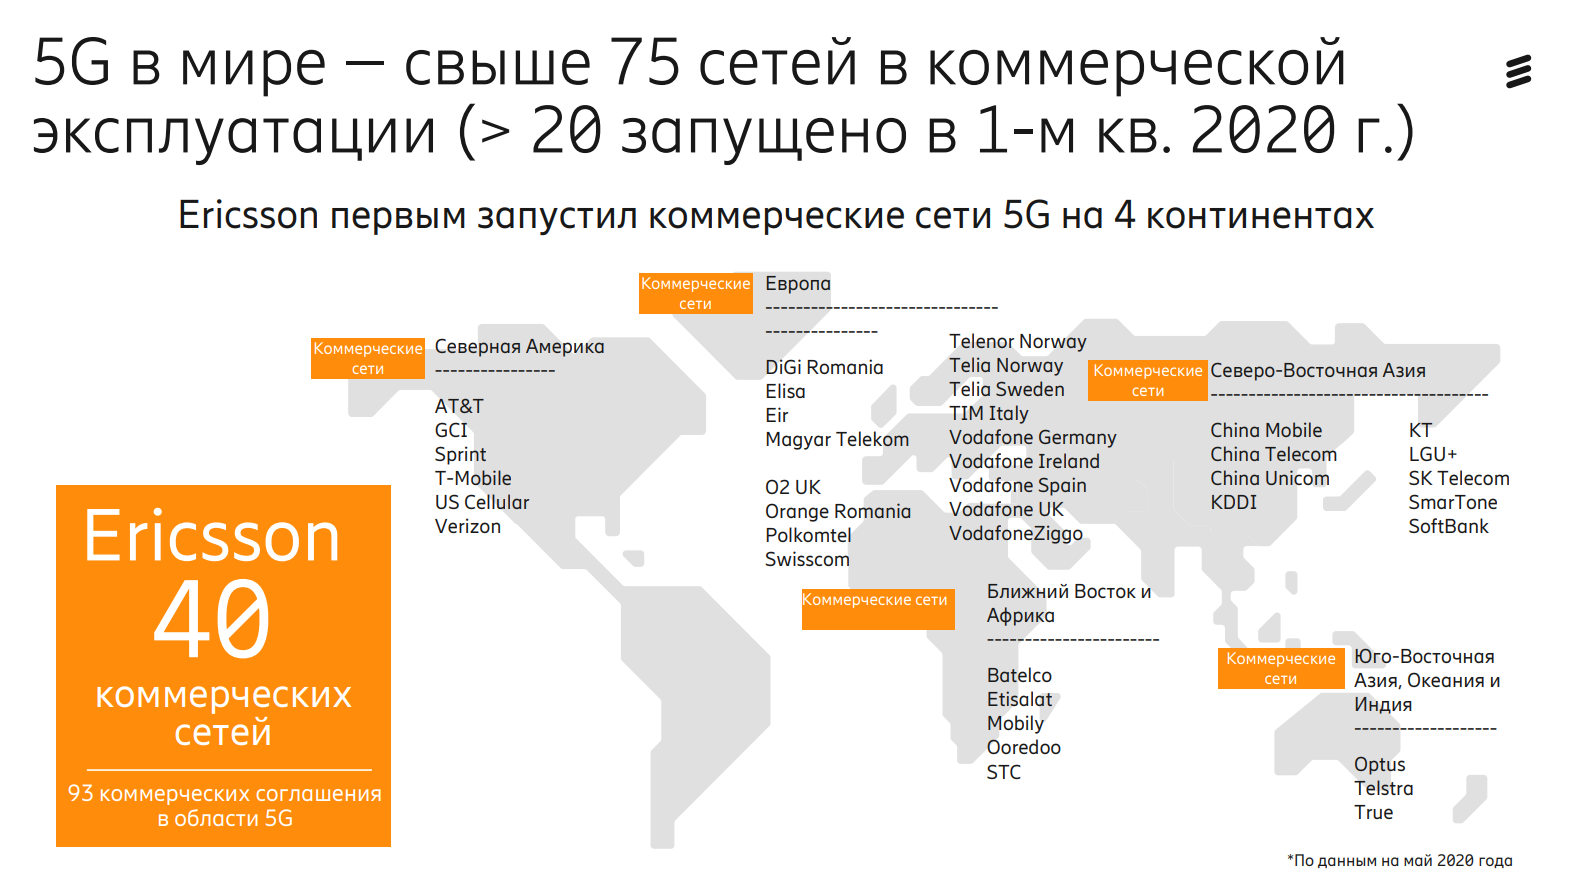 Сети 5g в россии. 5g в мире. Сеть 5g в России. Карта сетей 5g в мире. Распространение сетей 5g в мире.